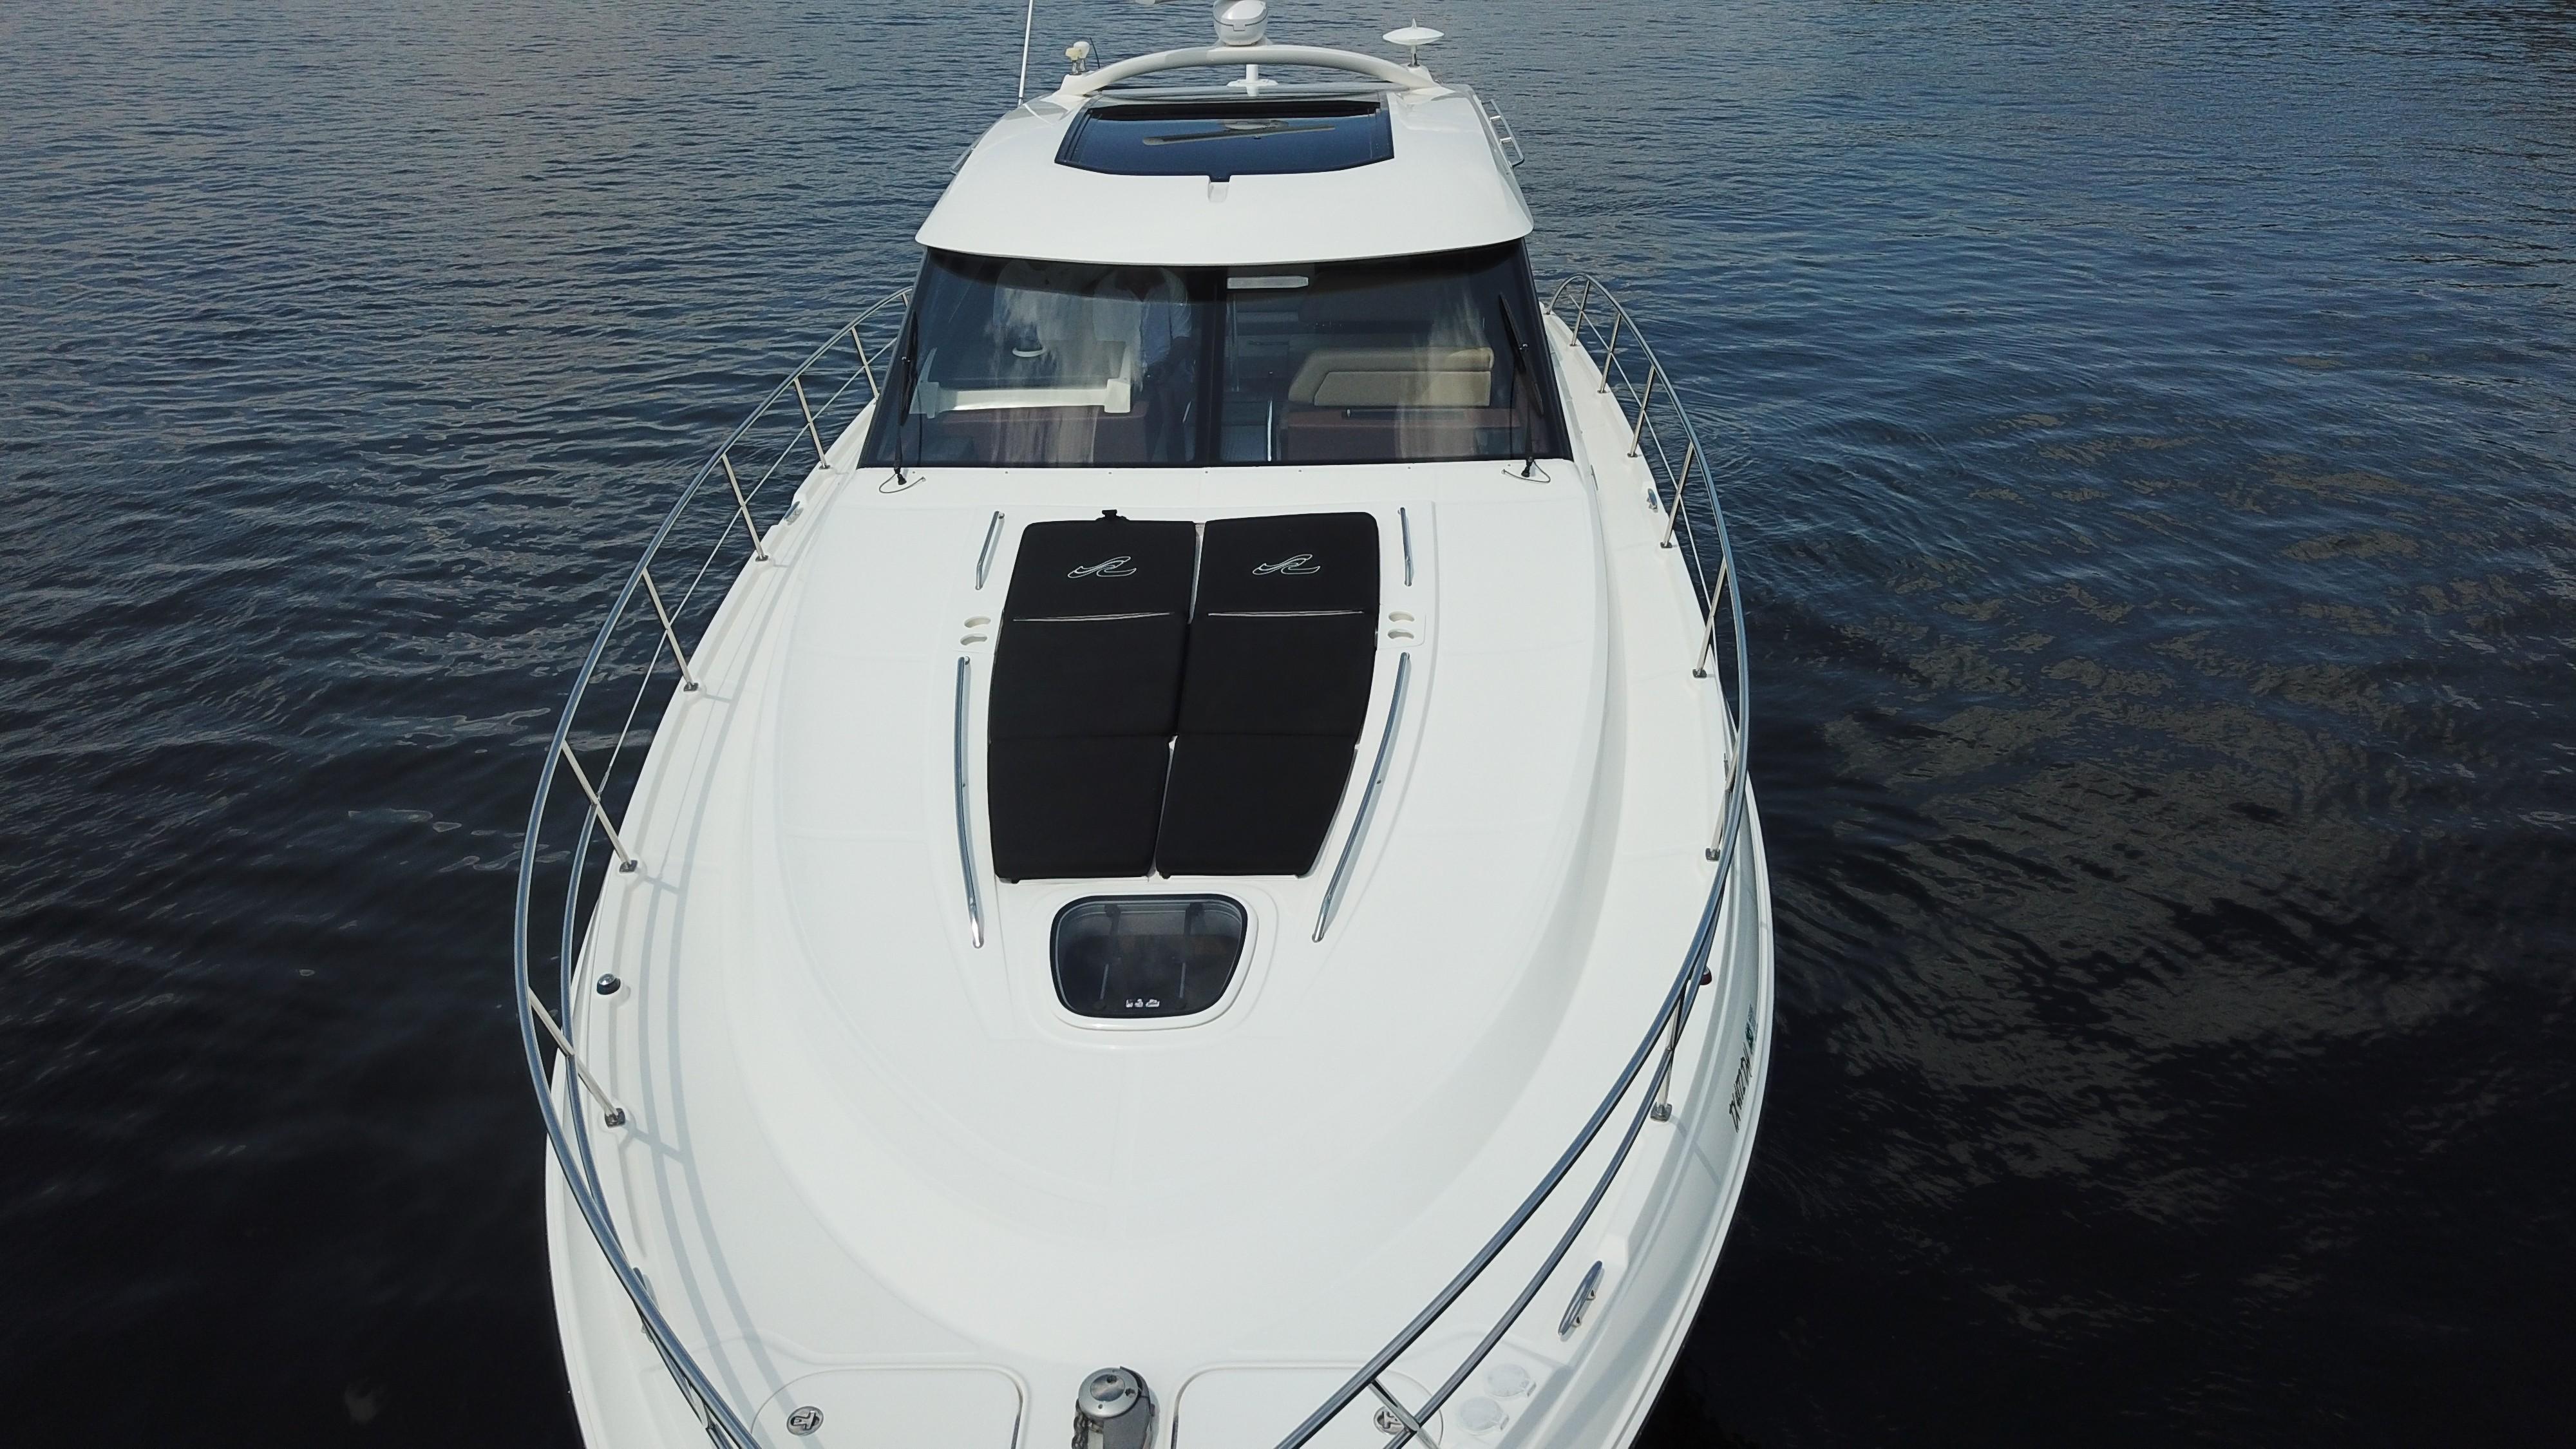 Fuelish Pleasure Yacht for Sale 47 Sea Ray Yachts ...